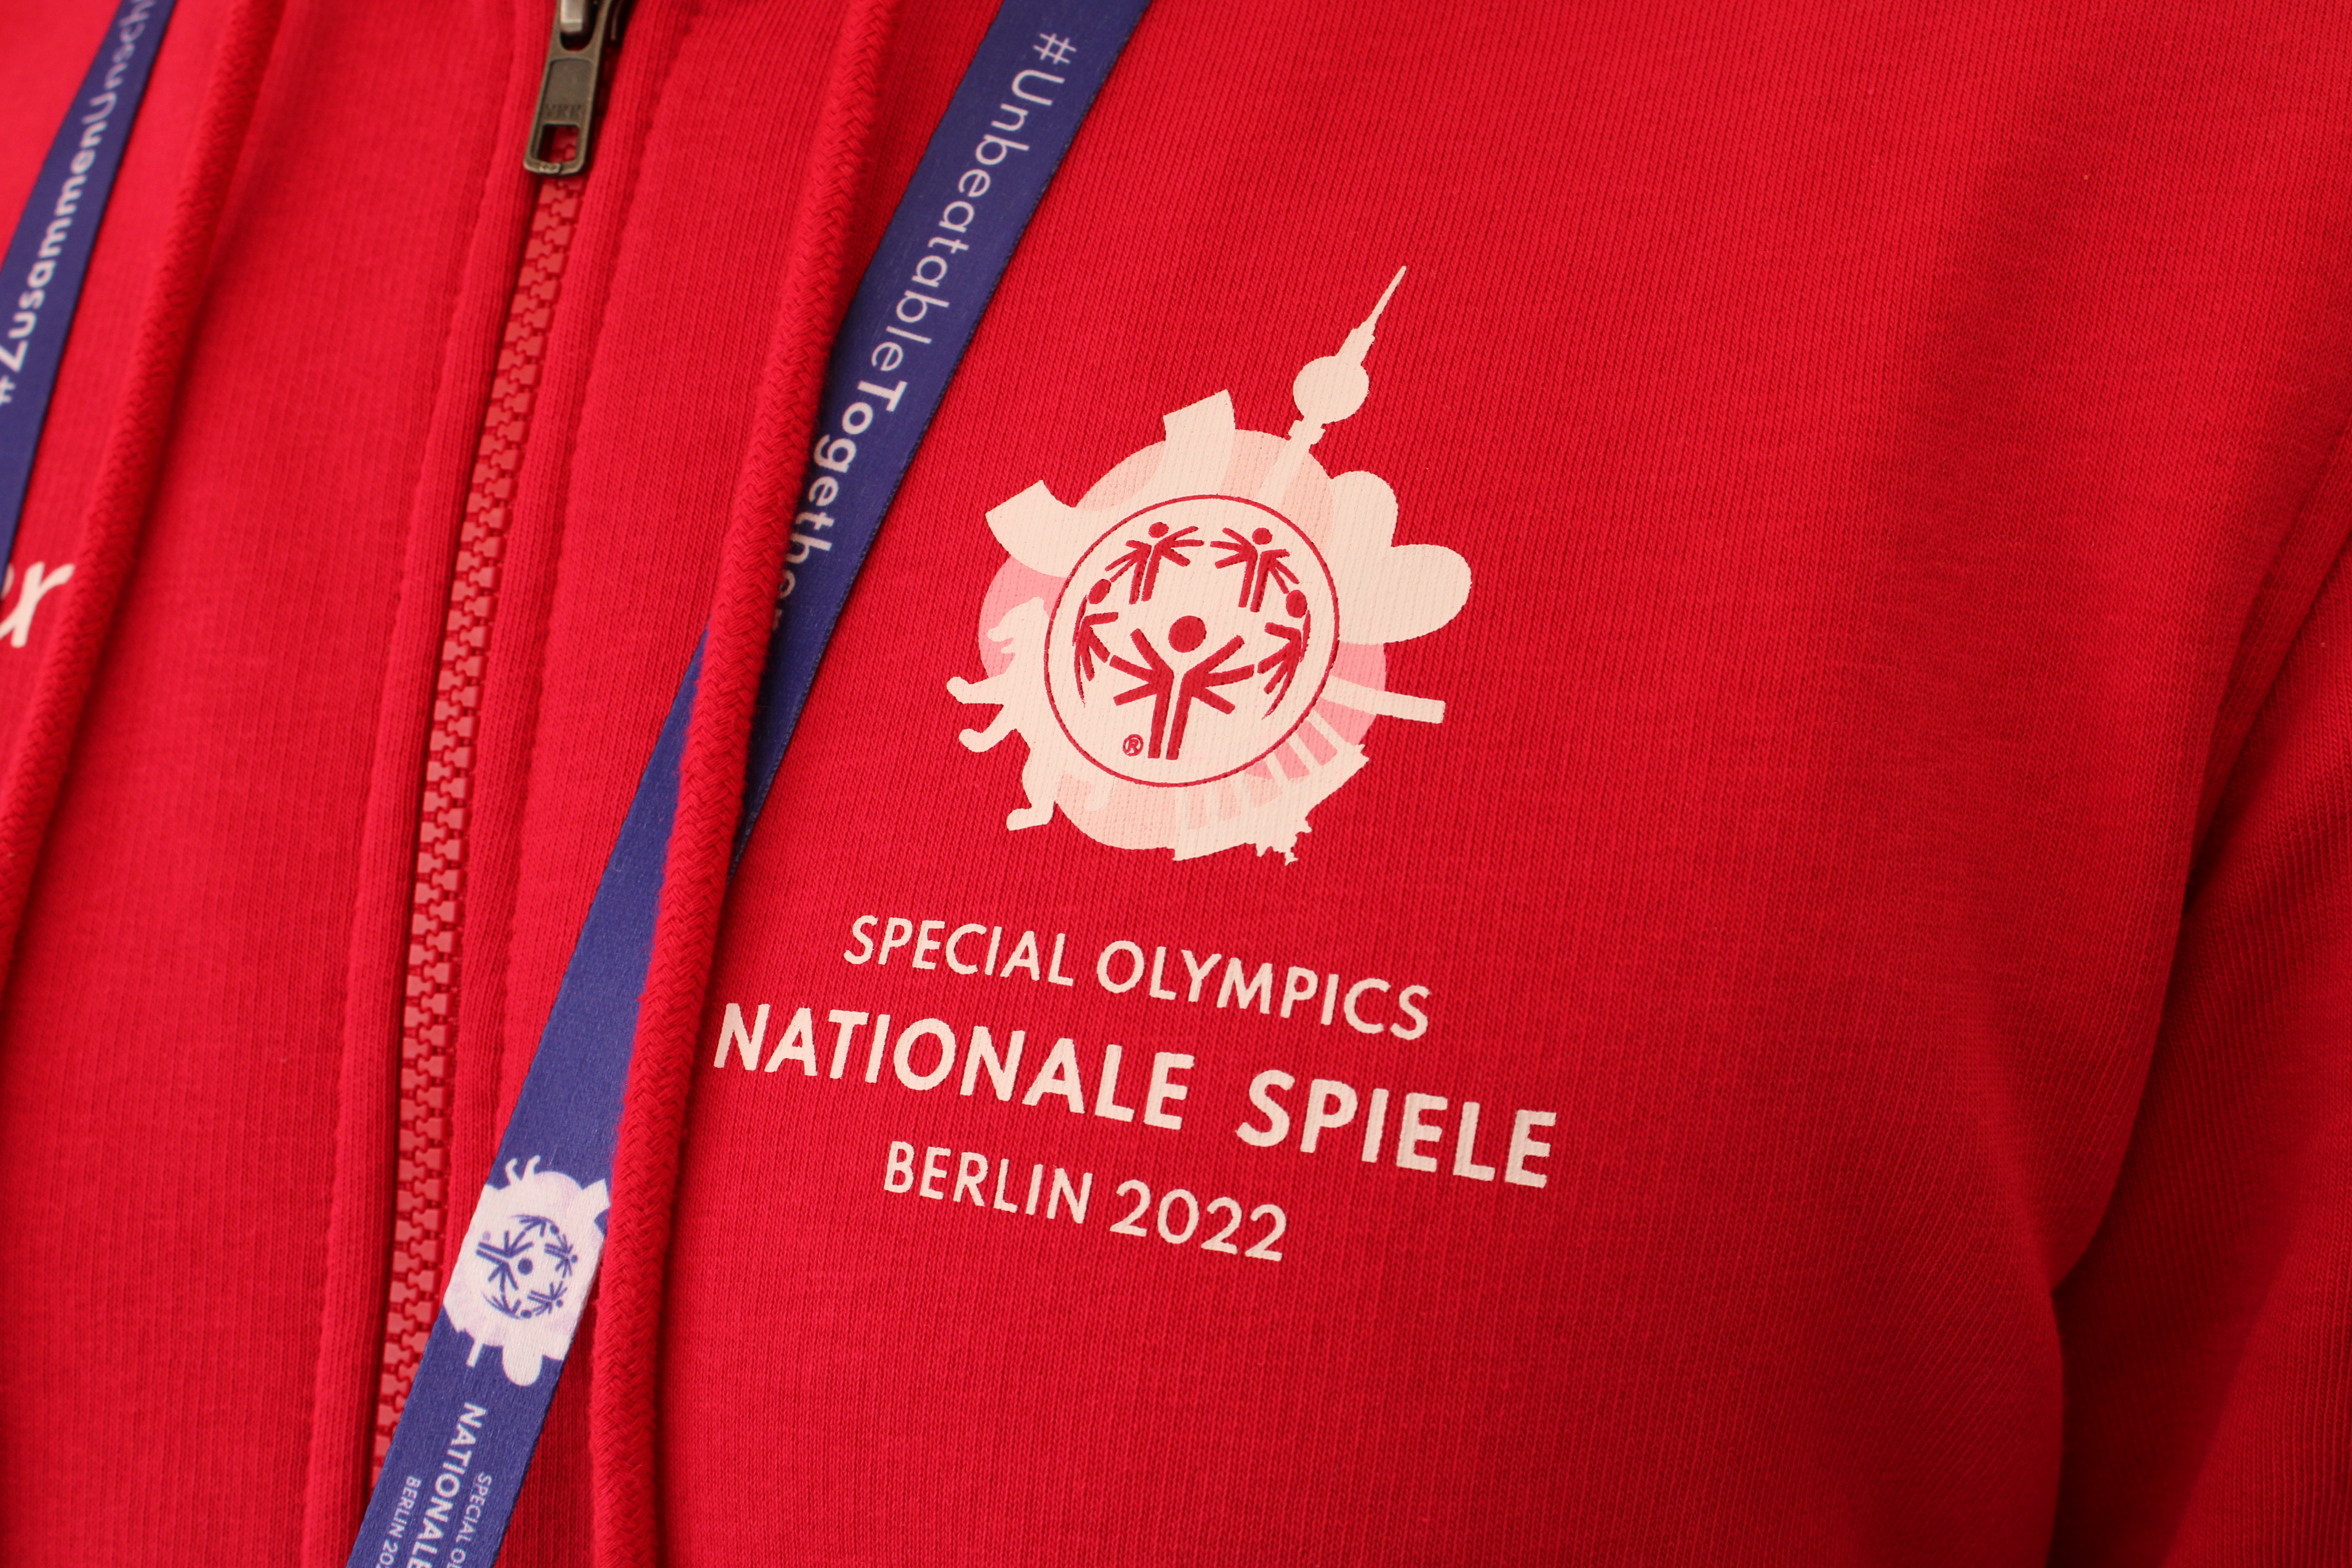 7 Sport-Thieme Volunteers unterstützen die Special Olympics Nationalen Spiele 2022